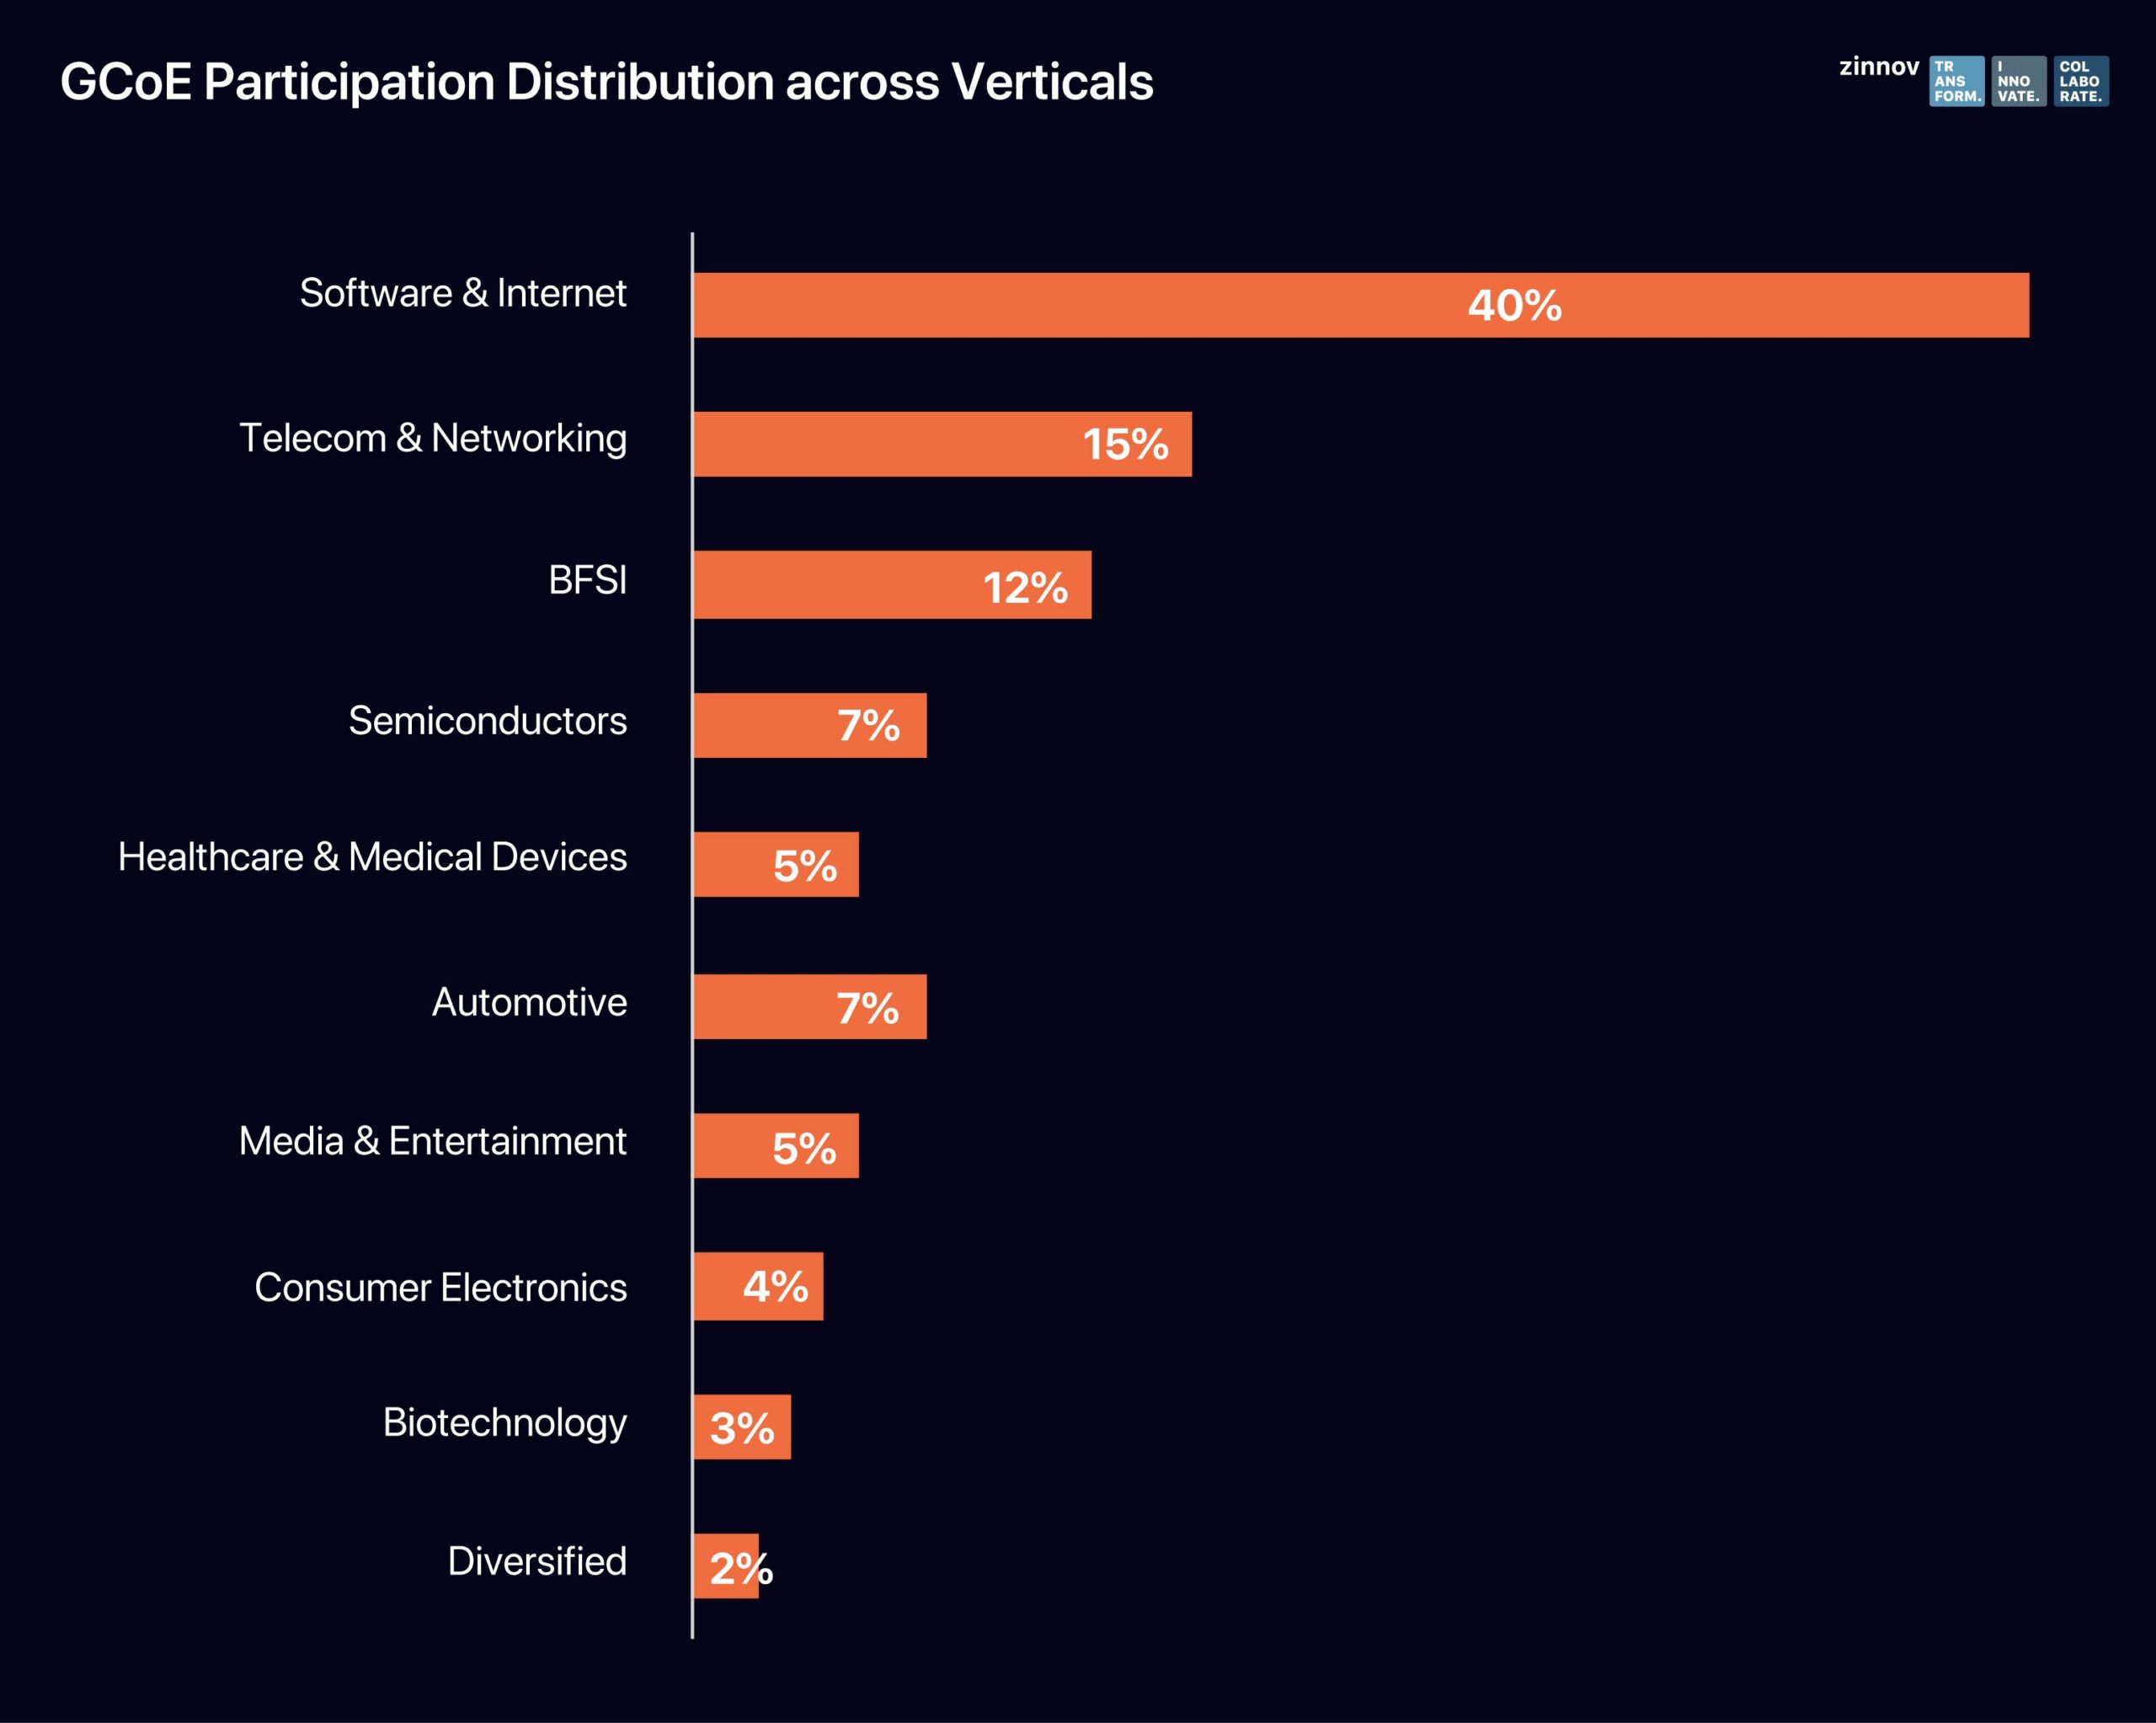 GCoE participation distribution across verticals